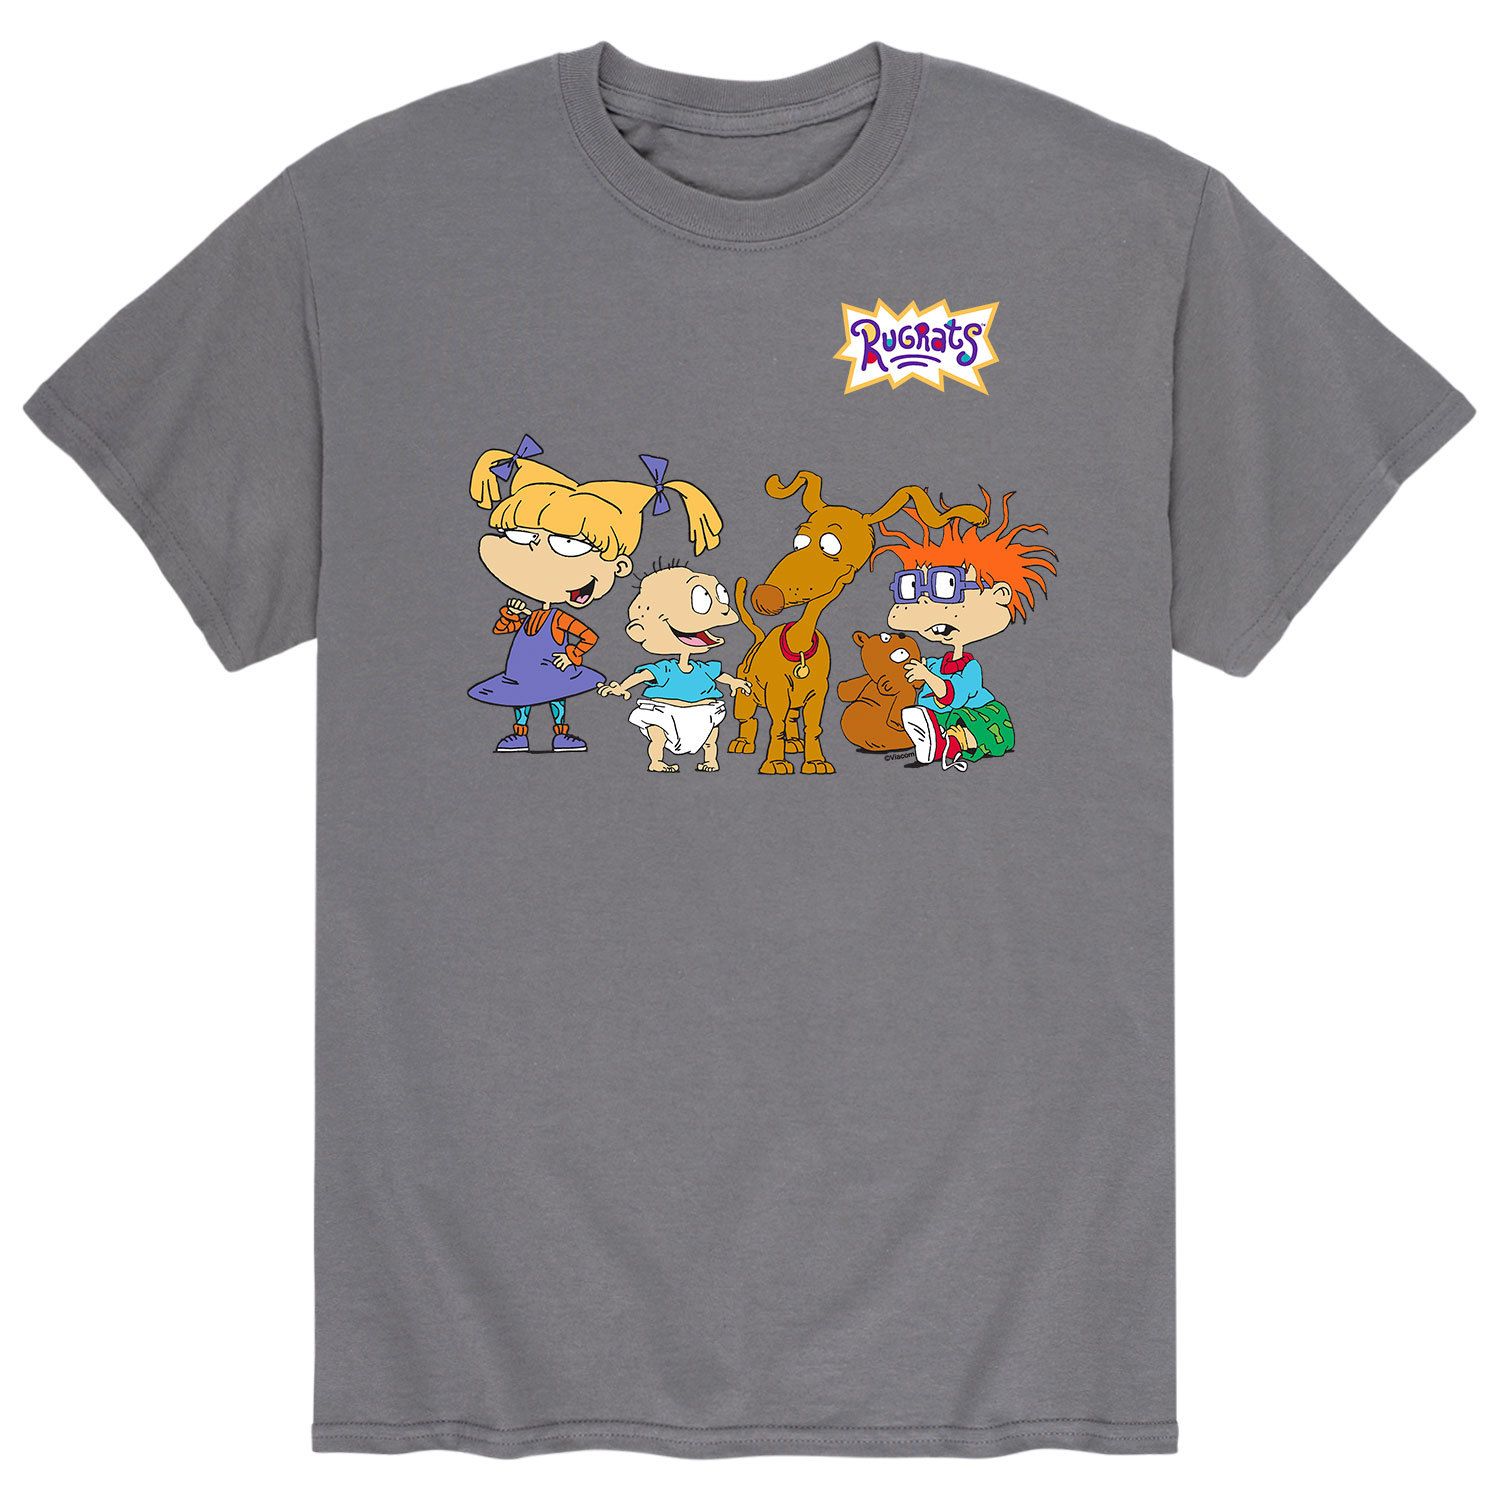 Мужская футболка Rugrats Hangouts Licensed Character